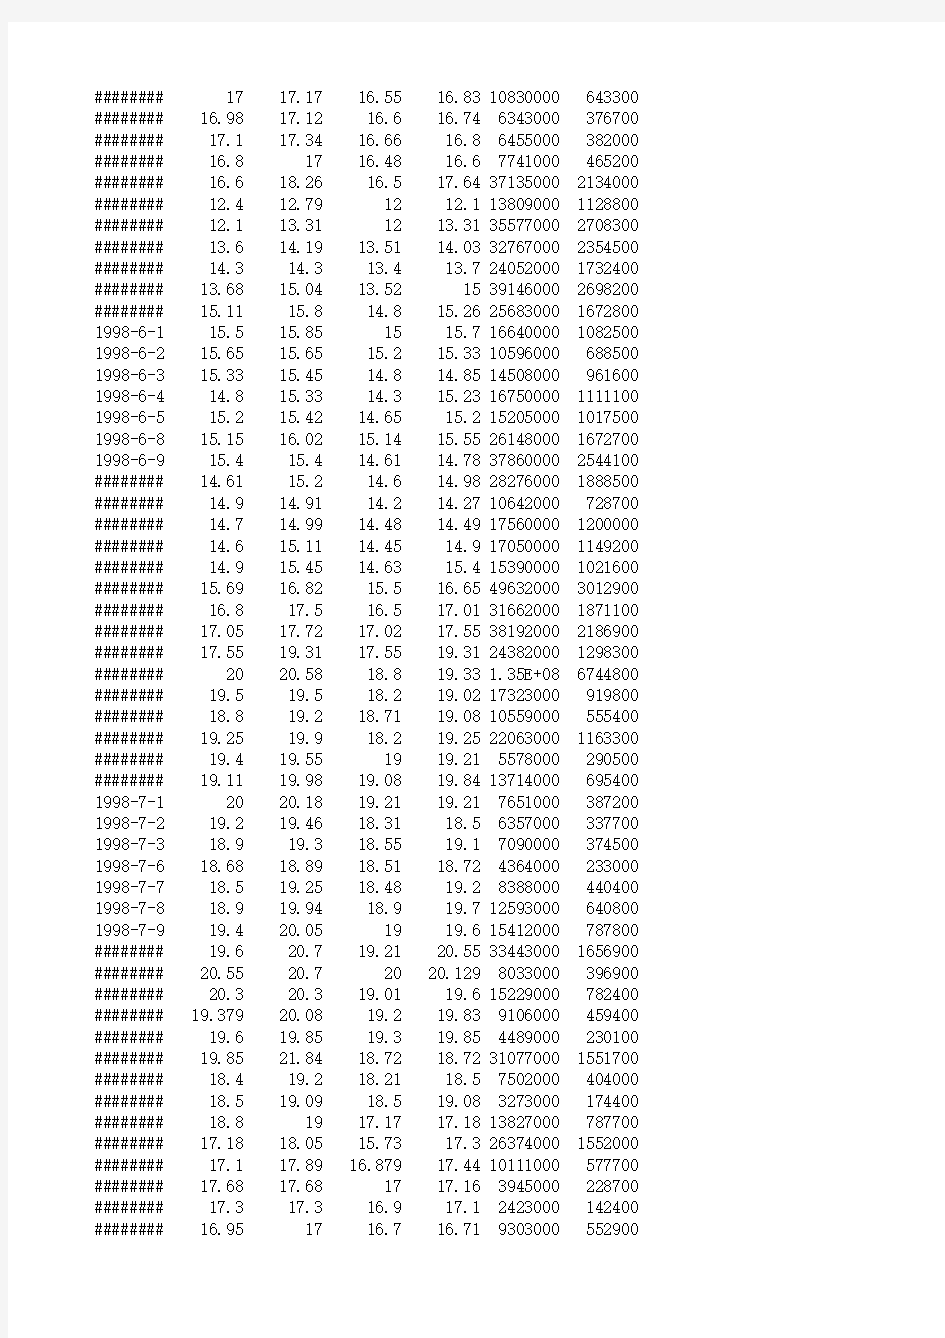 上海证券交易所股票交易历史数据(A股600139、2005年及之前)